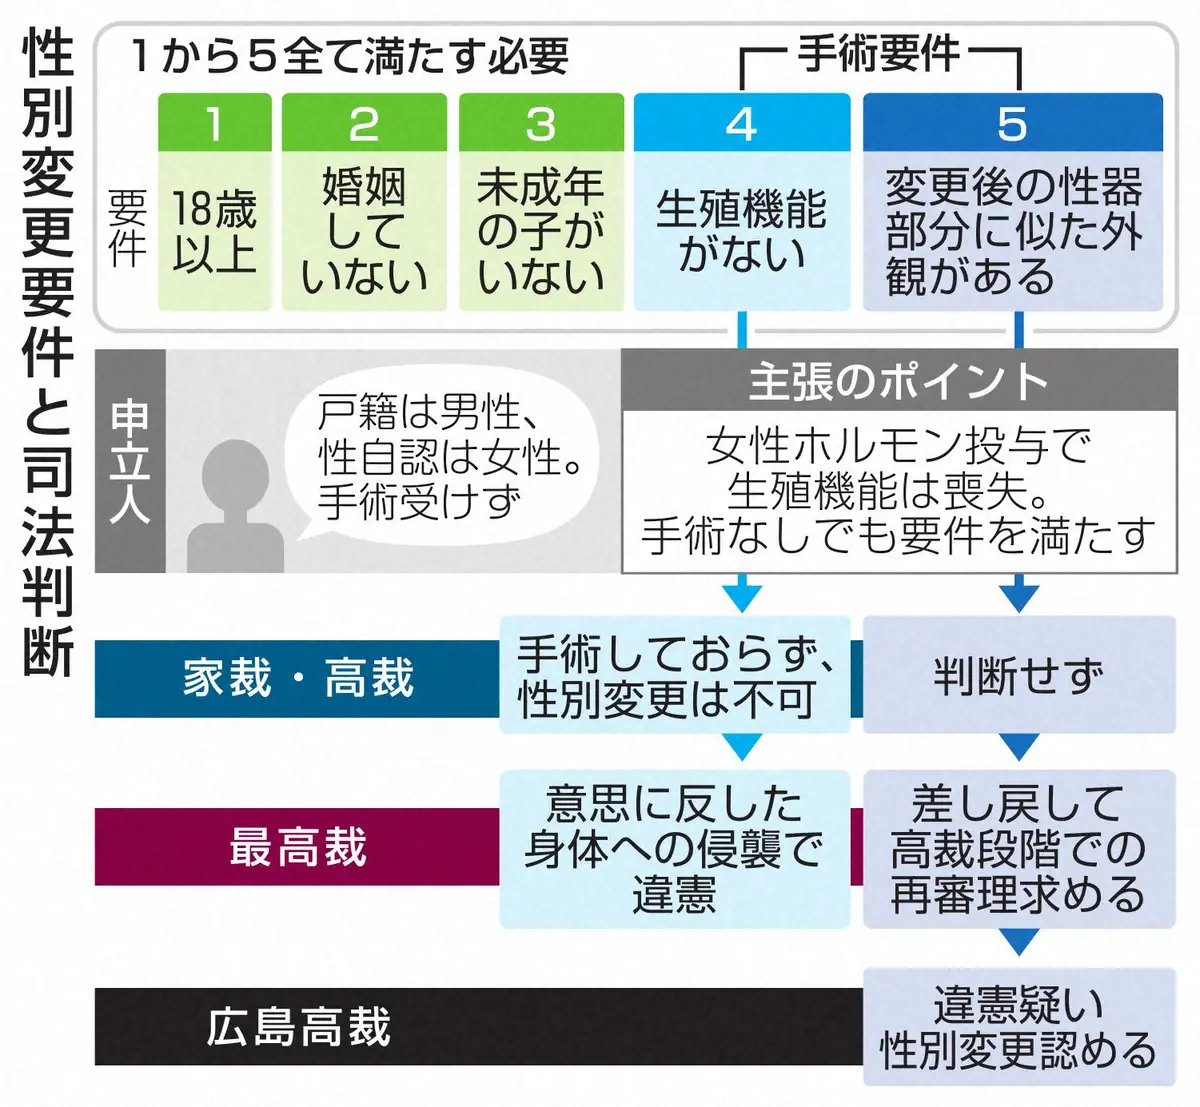 手術なしで性別変更認める　広島高裁　外観要件は「違憲の疑いがある」